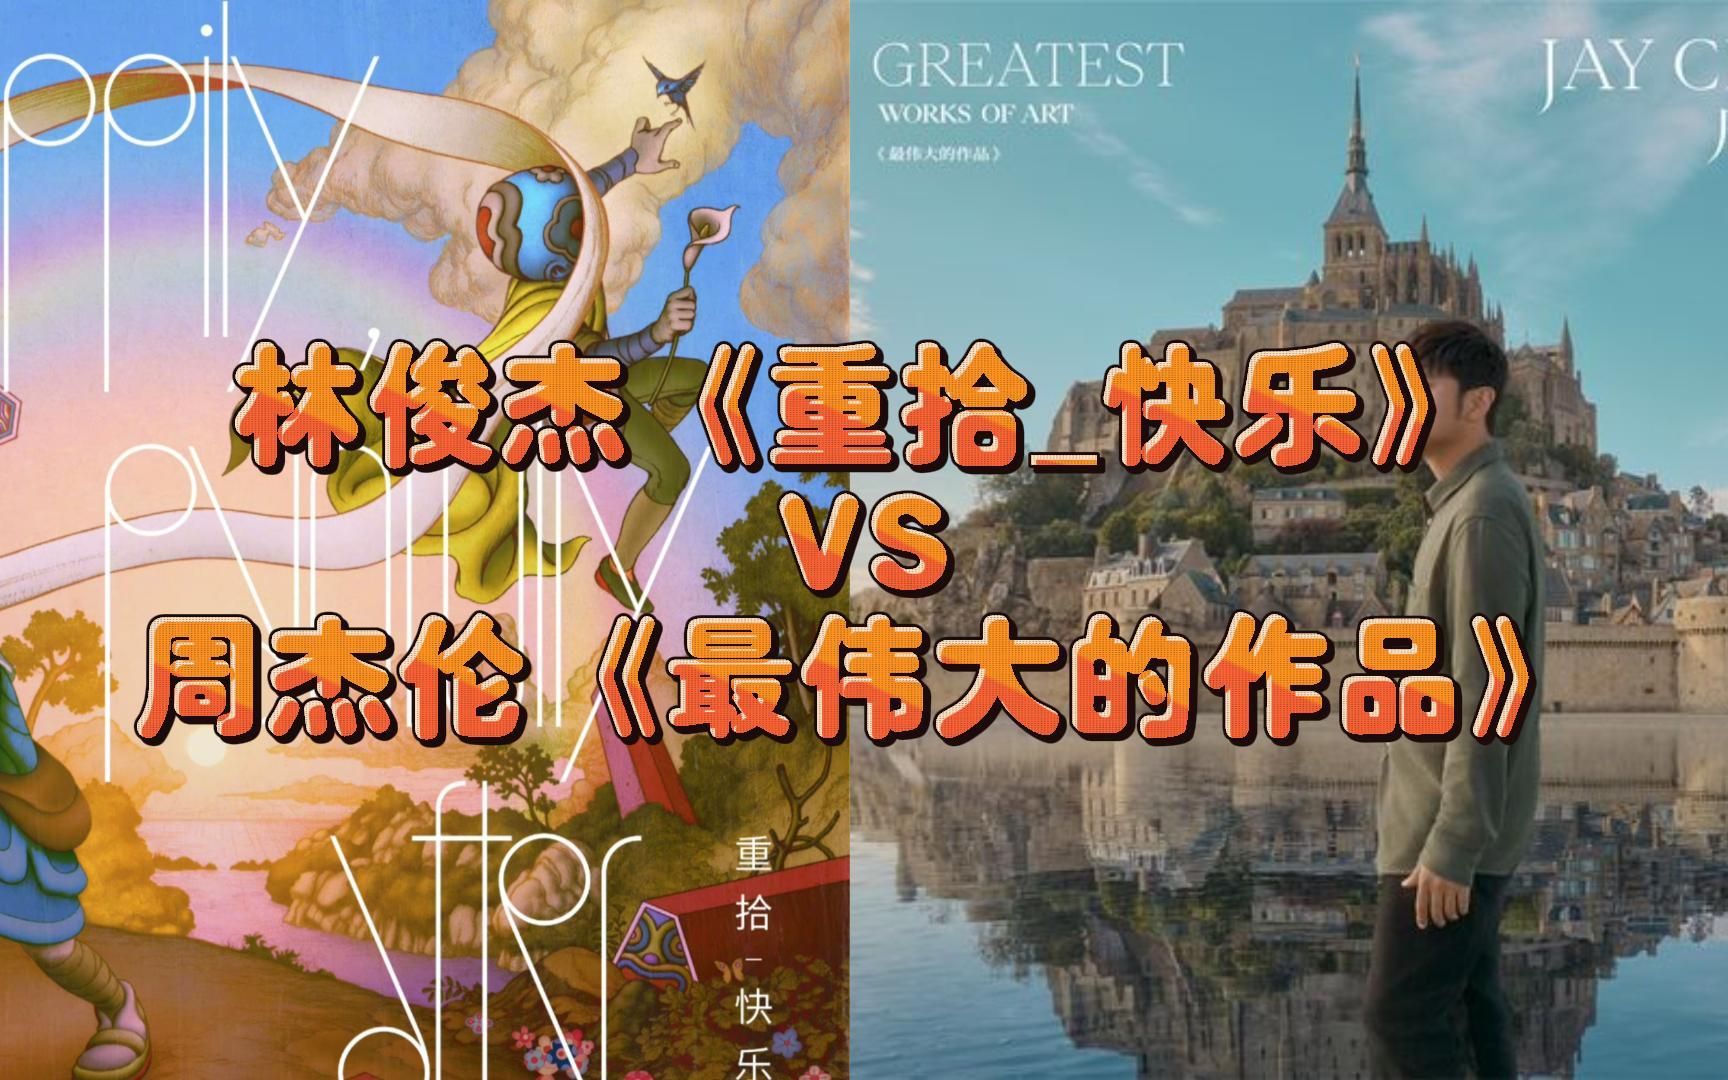 林俊杰最新专辑《重拾_快乐》VS周杰伦最新专辑《最伟大的作品》究竟哪方会更胜一筹？